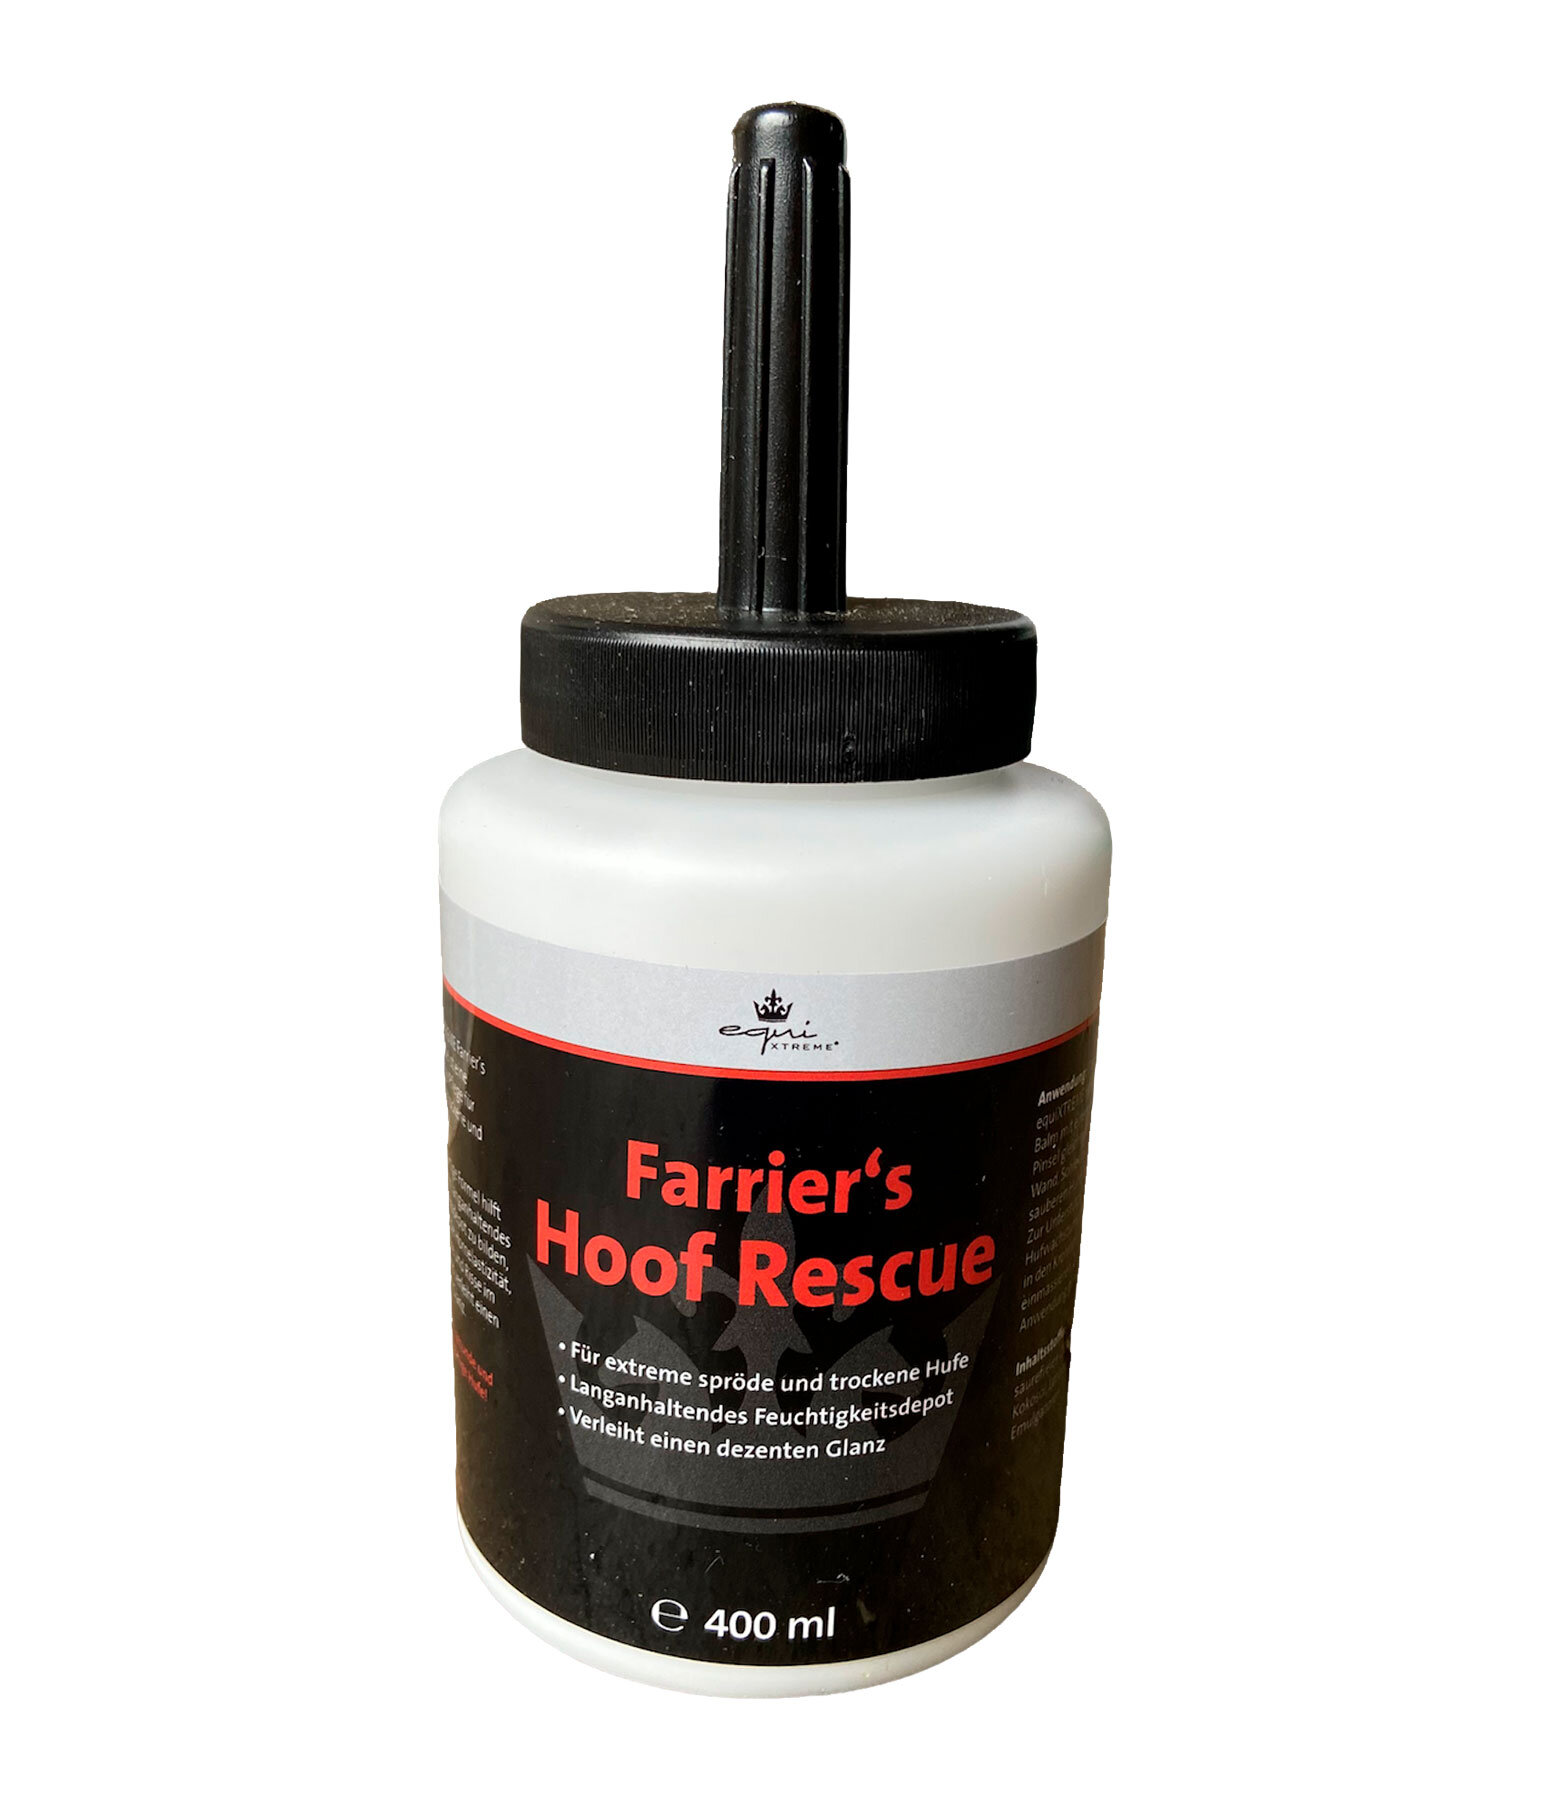 Farrier's Hoof Rescue